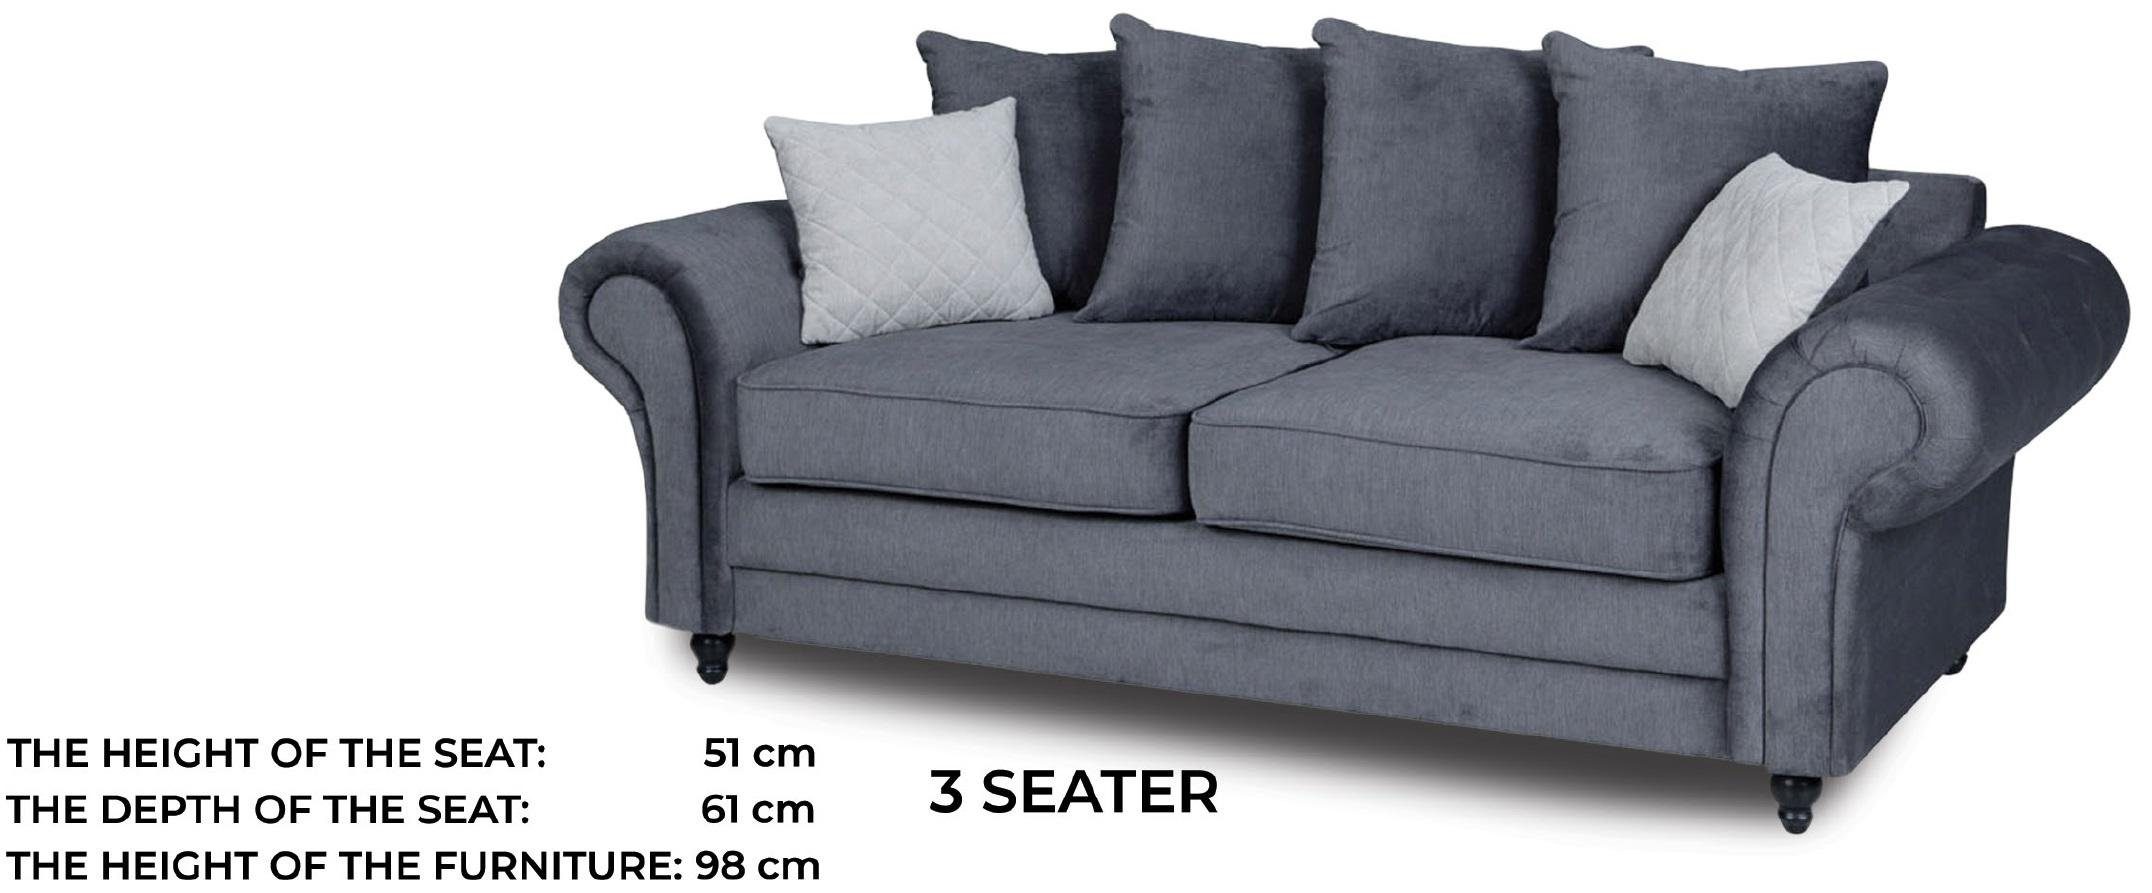 JVmoebel Sofa Luxus Grauer Polster Stilvoll Made Neu, moderne Europe in Dreisitzer Couch